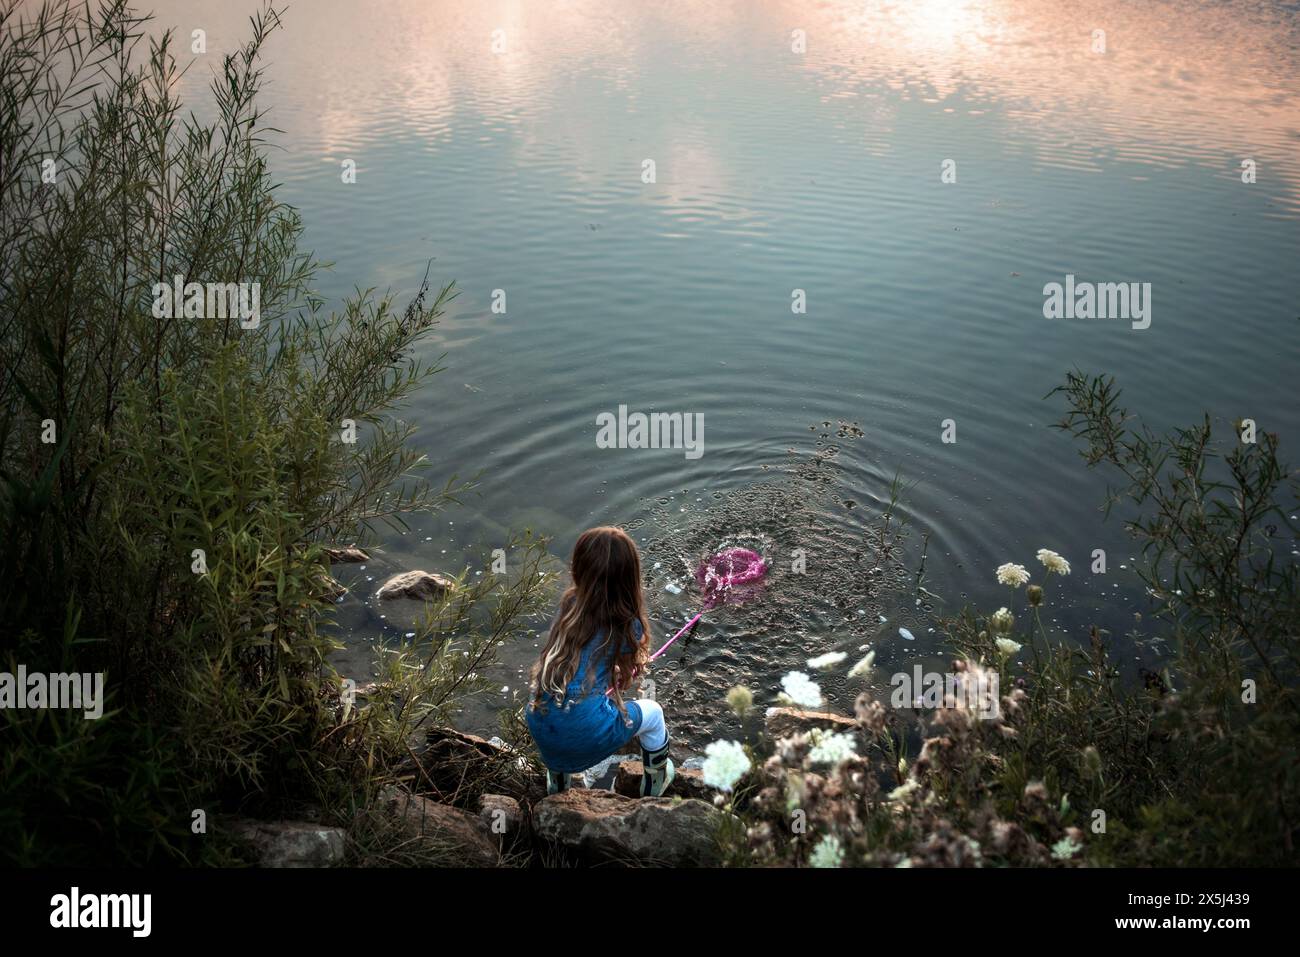 Jeune fille éclaboussant de l'eau dans le lac au coucher du soleil Banque D'Images